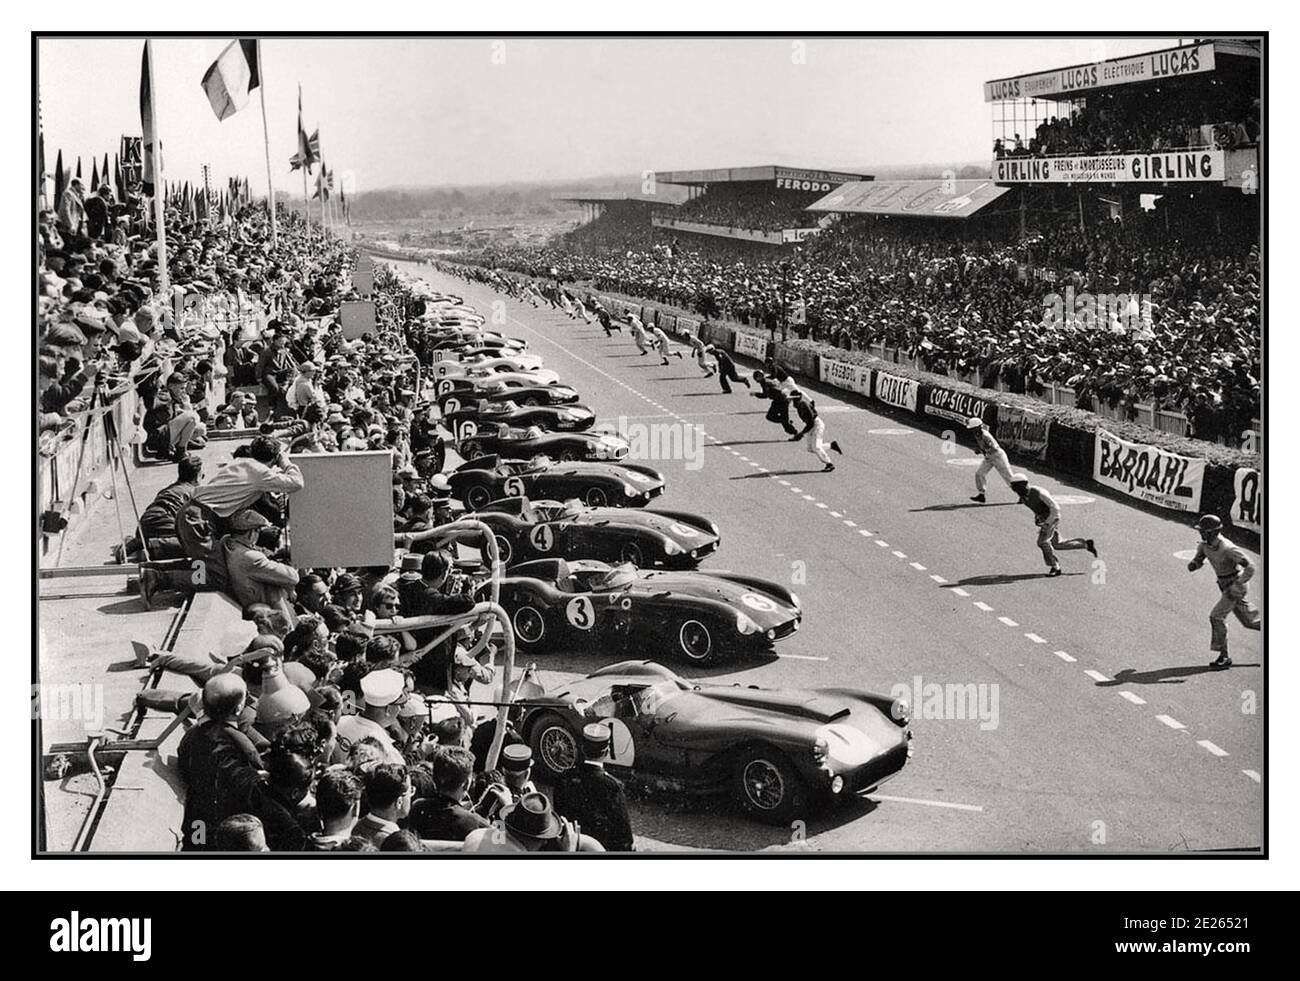 1955 Le Mans 24 HR carrera de archivo vintage inicio de carrera tradicional con los conductores sprinting a sus coches en 1955 Le Mans 24 horas de inicio de carrera. Esta carrera vio un trágico y catastrófico accidente que mató a ochenta y tres espectadores cuando un motor de coche de Mercedes y partes rodaron a través de la multitud principal. Mercedes se retiró de las carreras de coches durante una década como resultado. El ganador final : Jaguar D Tipo No 6 conducido por M. Hawthorn y I. Bueb. Distancia recorrida 4.135,380 km a una media de 172,308 km/h Brecha entre 1st y 2nd Lugar: 73,362 km Foto de stock